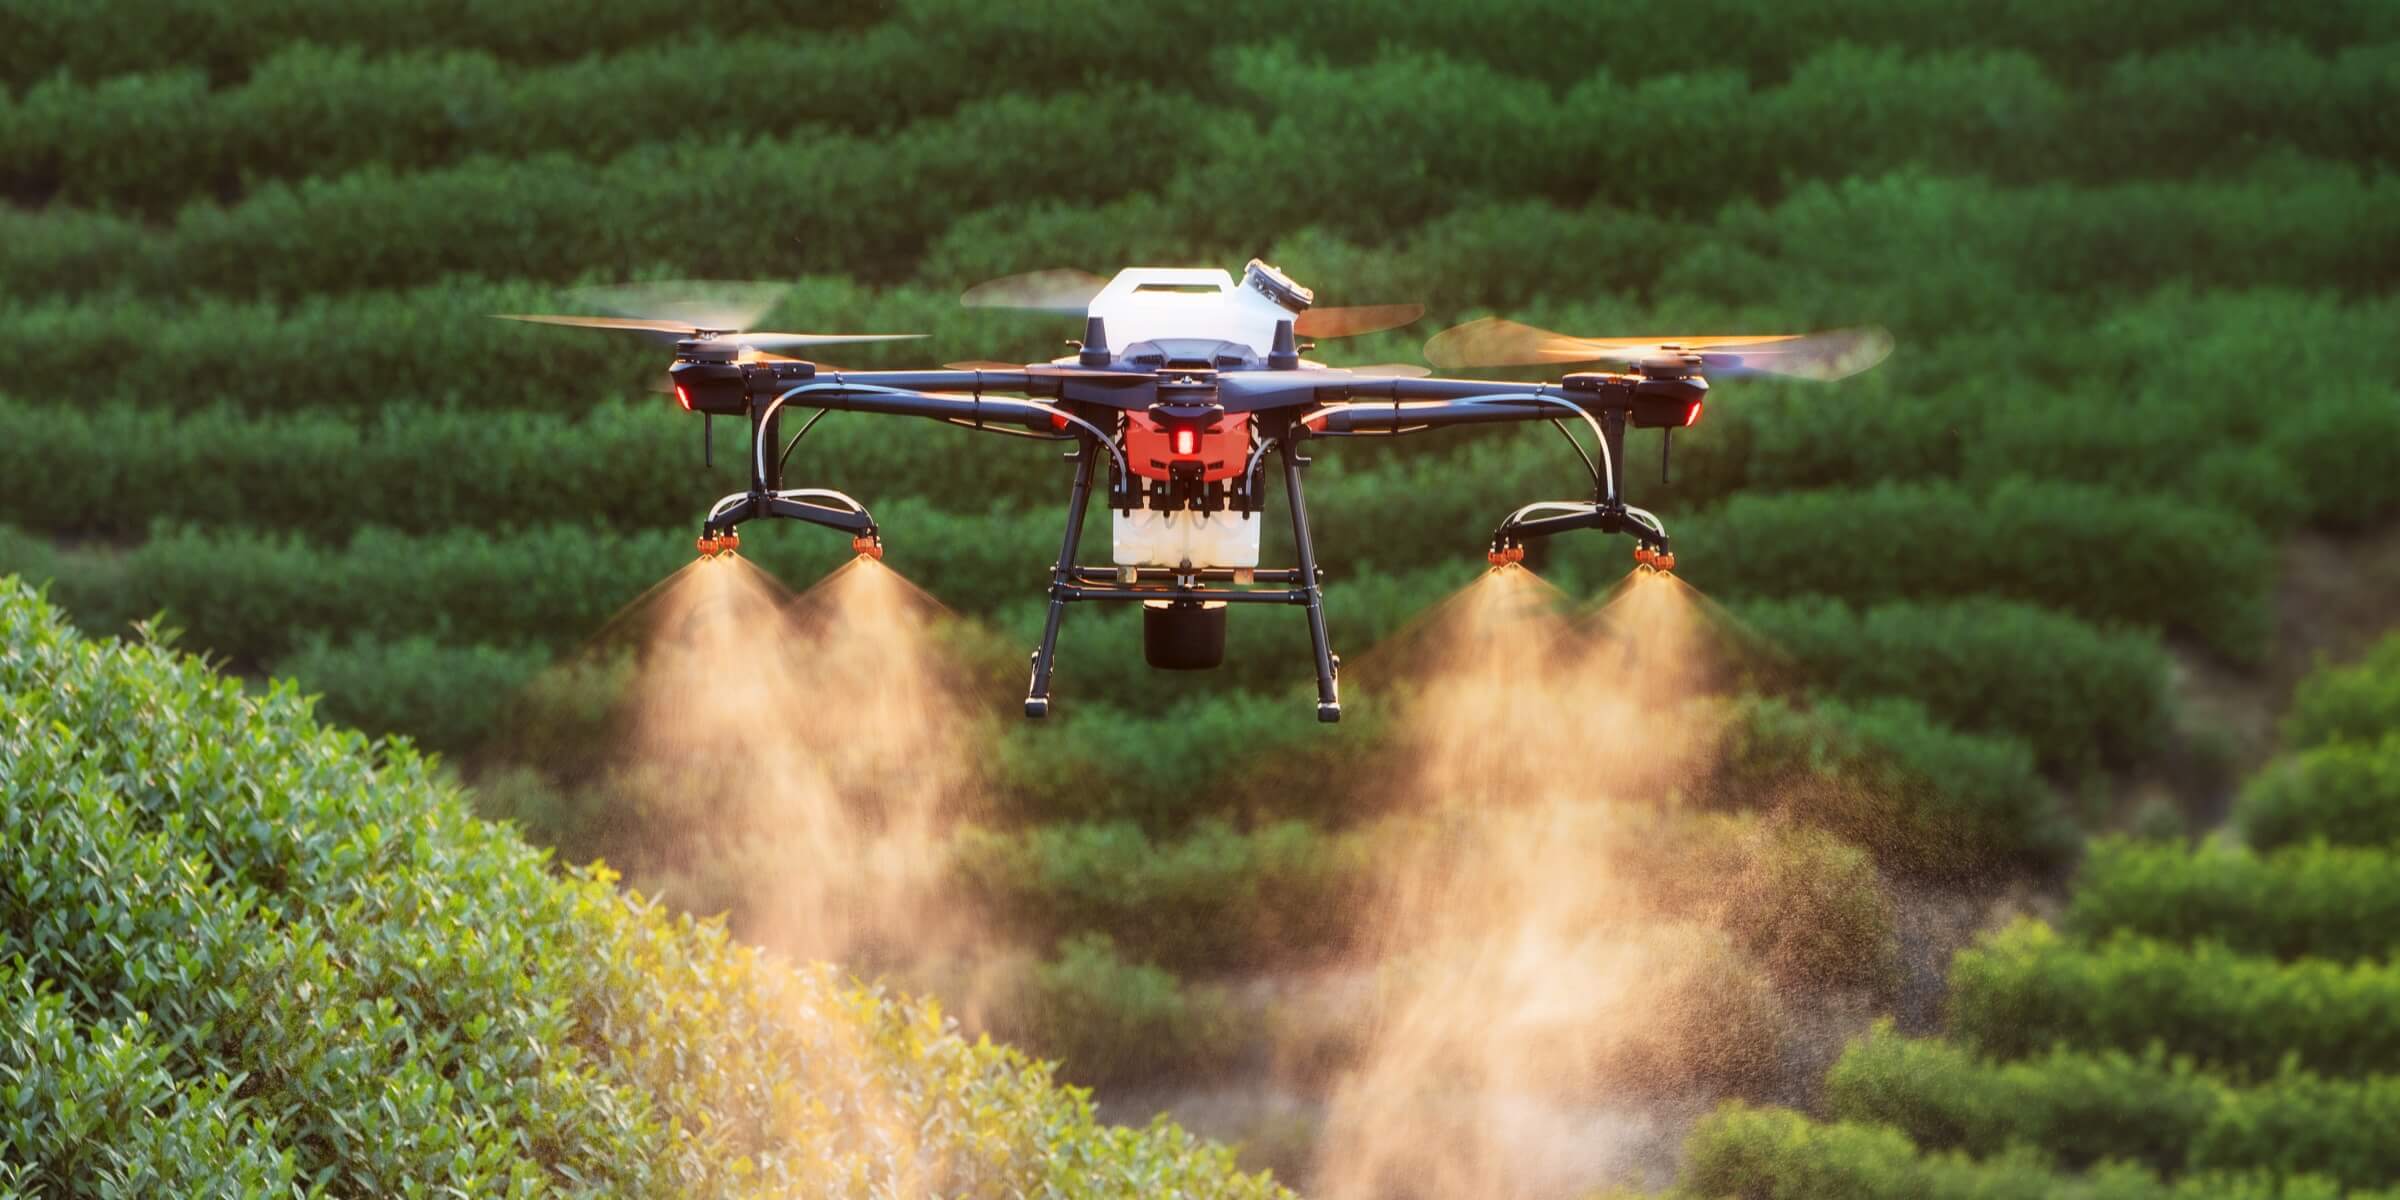 Mezőgazdasági drón, amely buja zöld növények felett repül, műtrágyát vagy növényvédő szert permetez. a kora reggeli fény kiemeli a permet ködét és a mező texturált sorait.